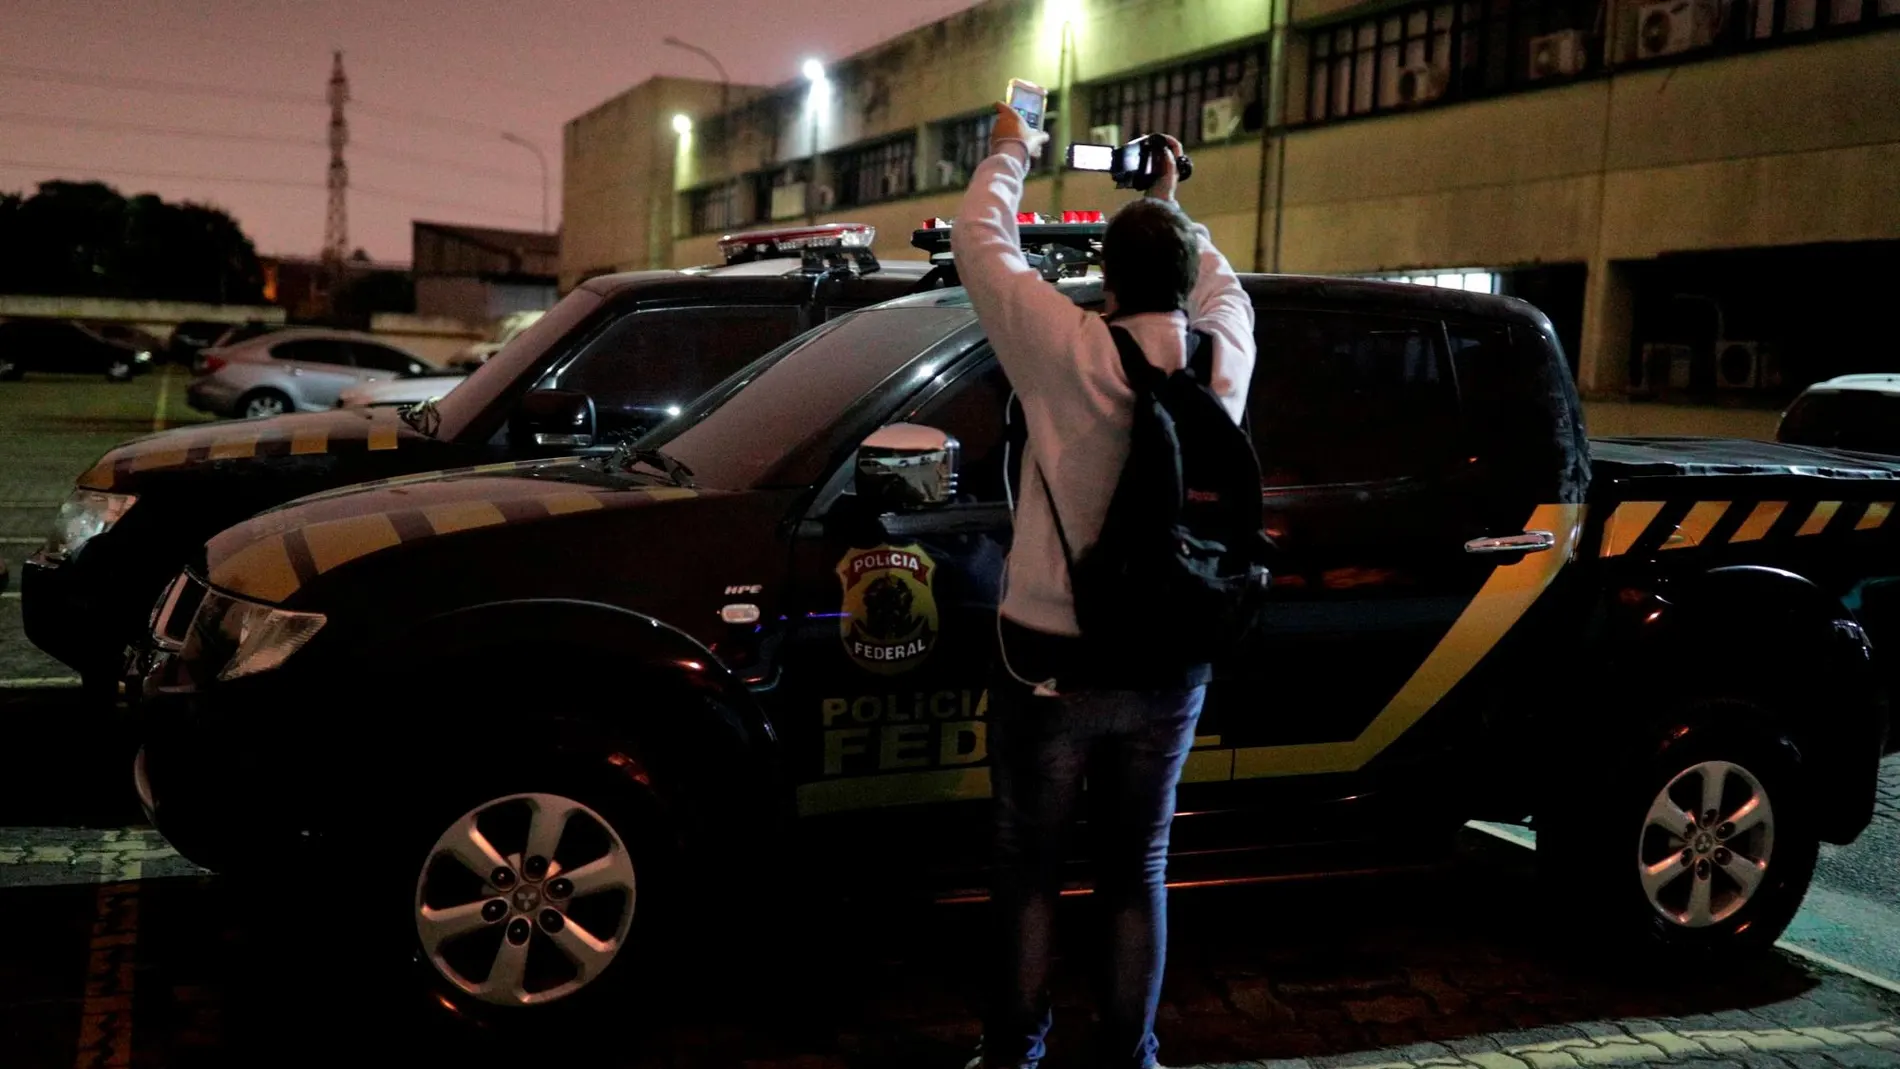 Uno de los vehículos utilizados por los atracadores. REUTERS/Nacho Doce